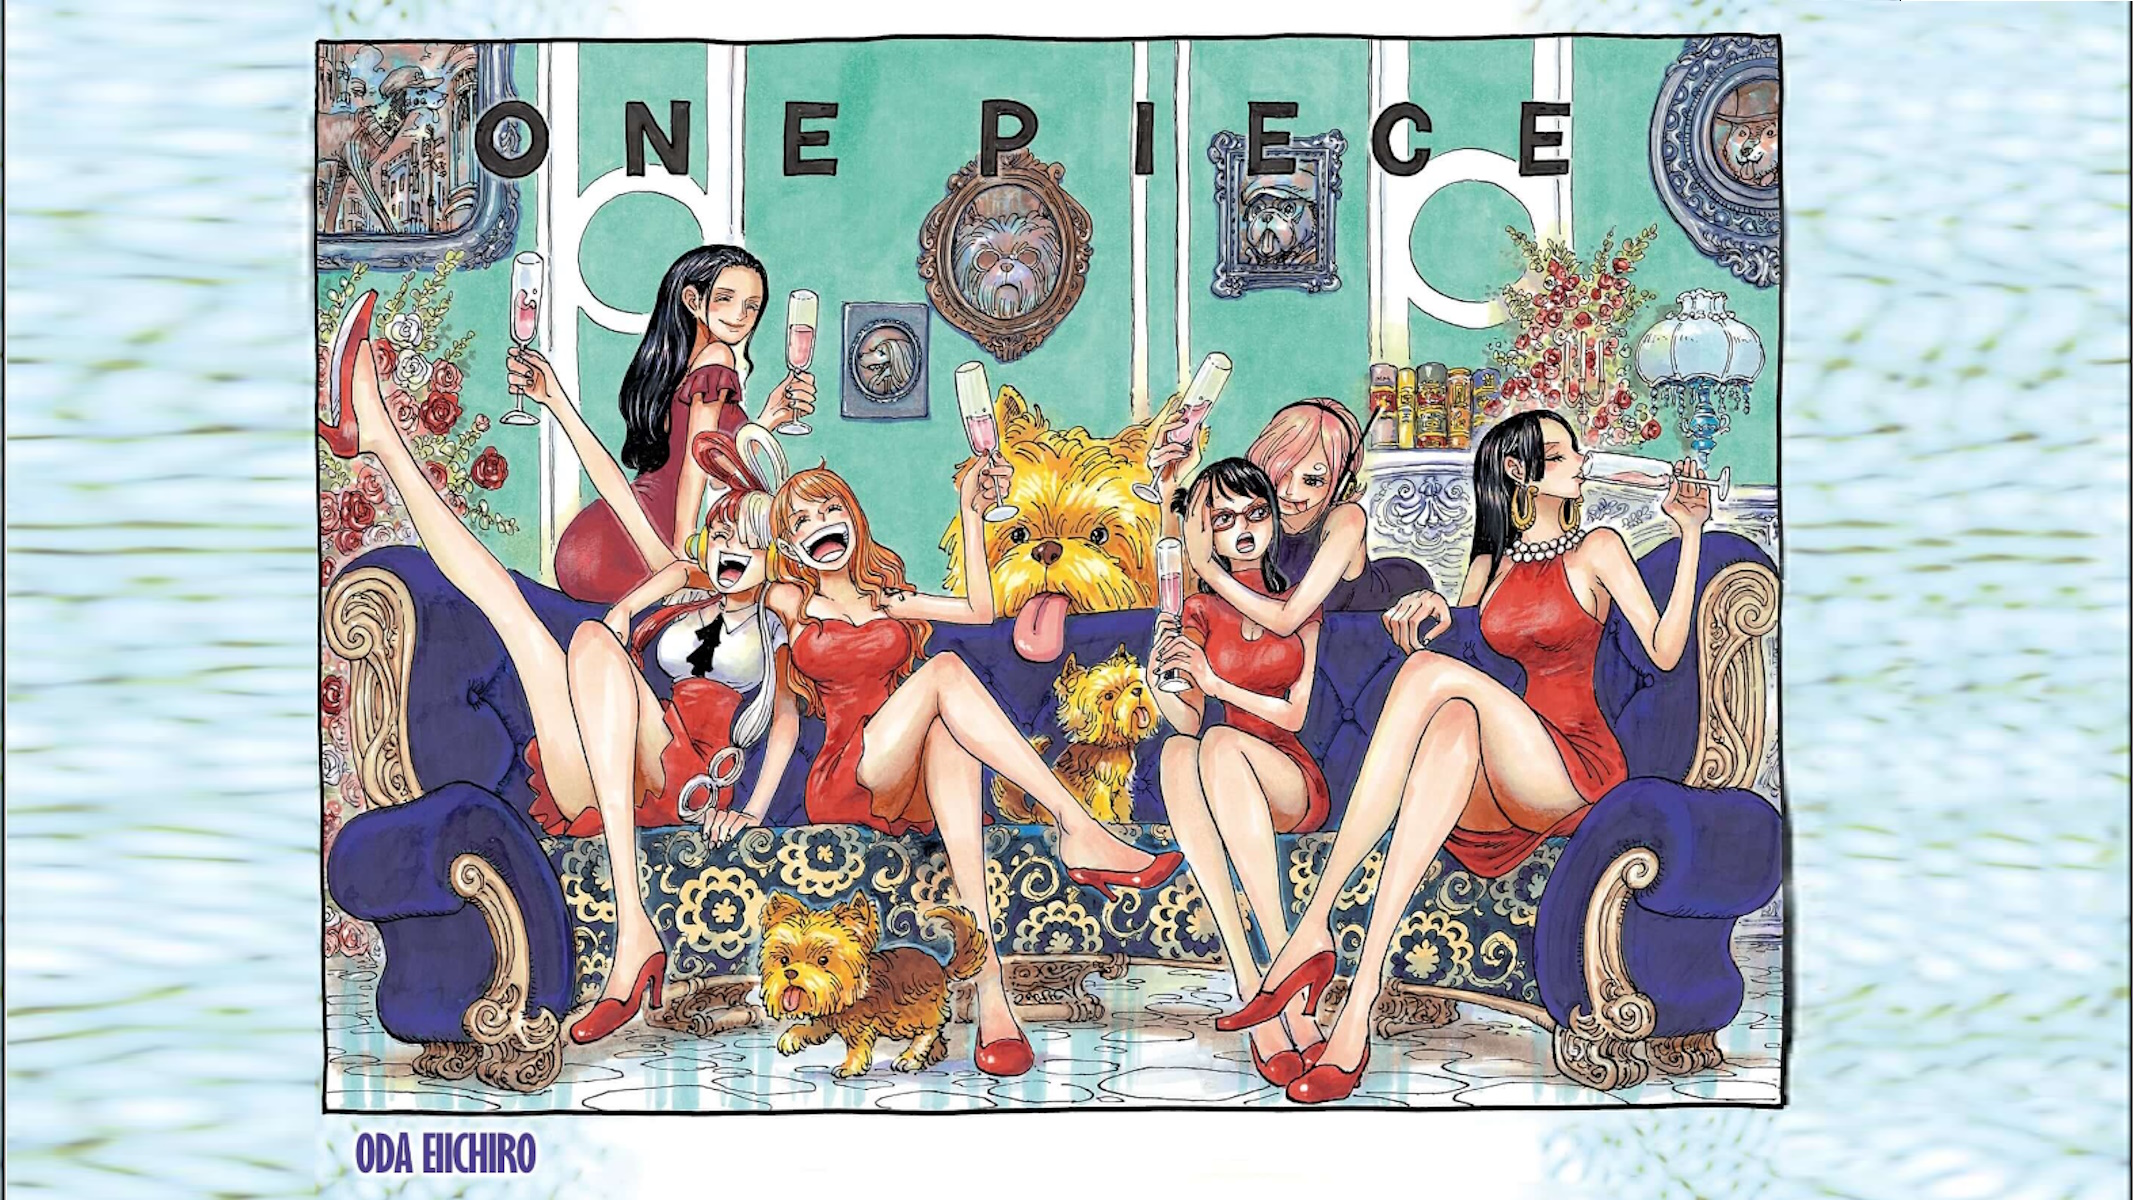 One Piece immagine di copertina del capitolo 1108